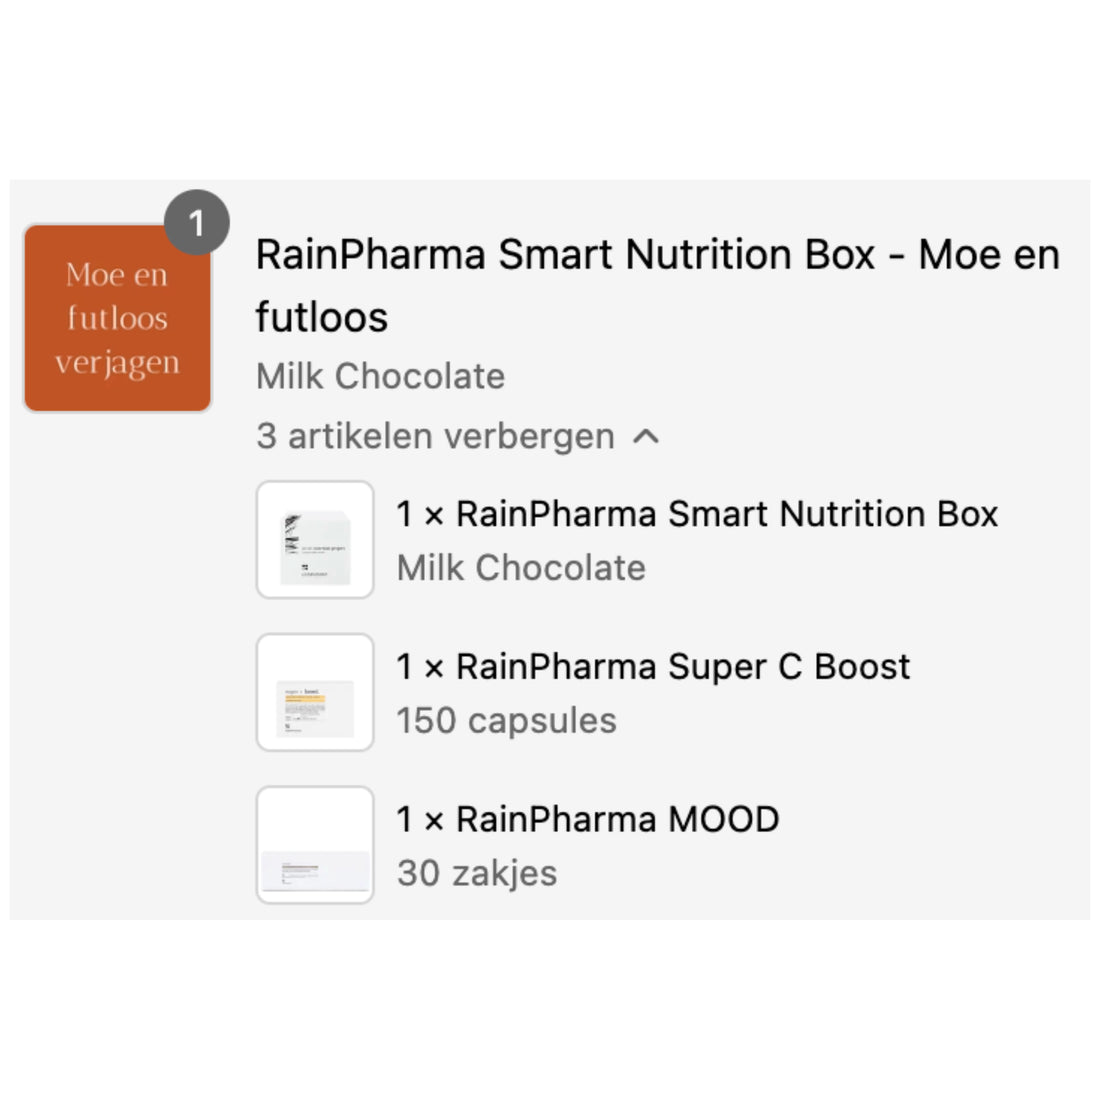 RainPharma Smart Nutrition Box - Moe en futloos